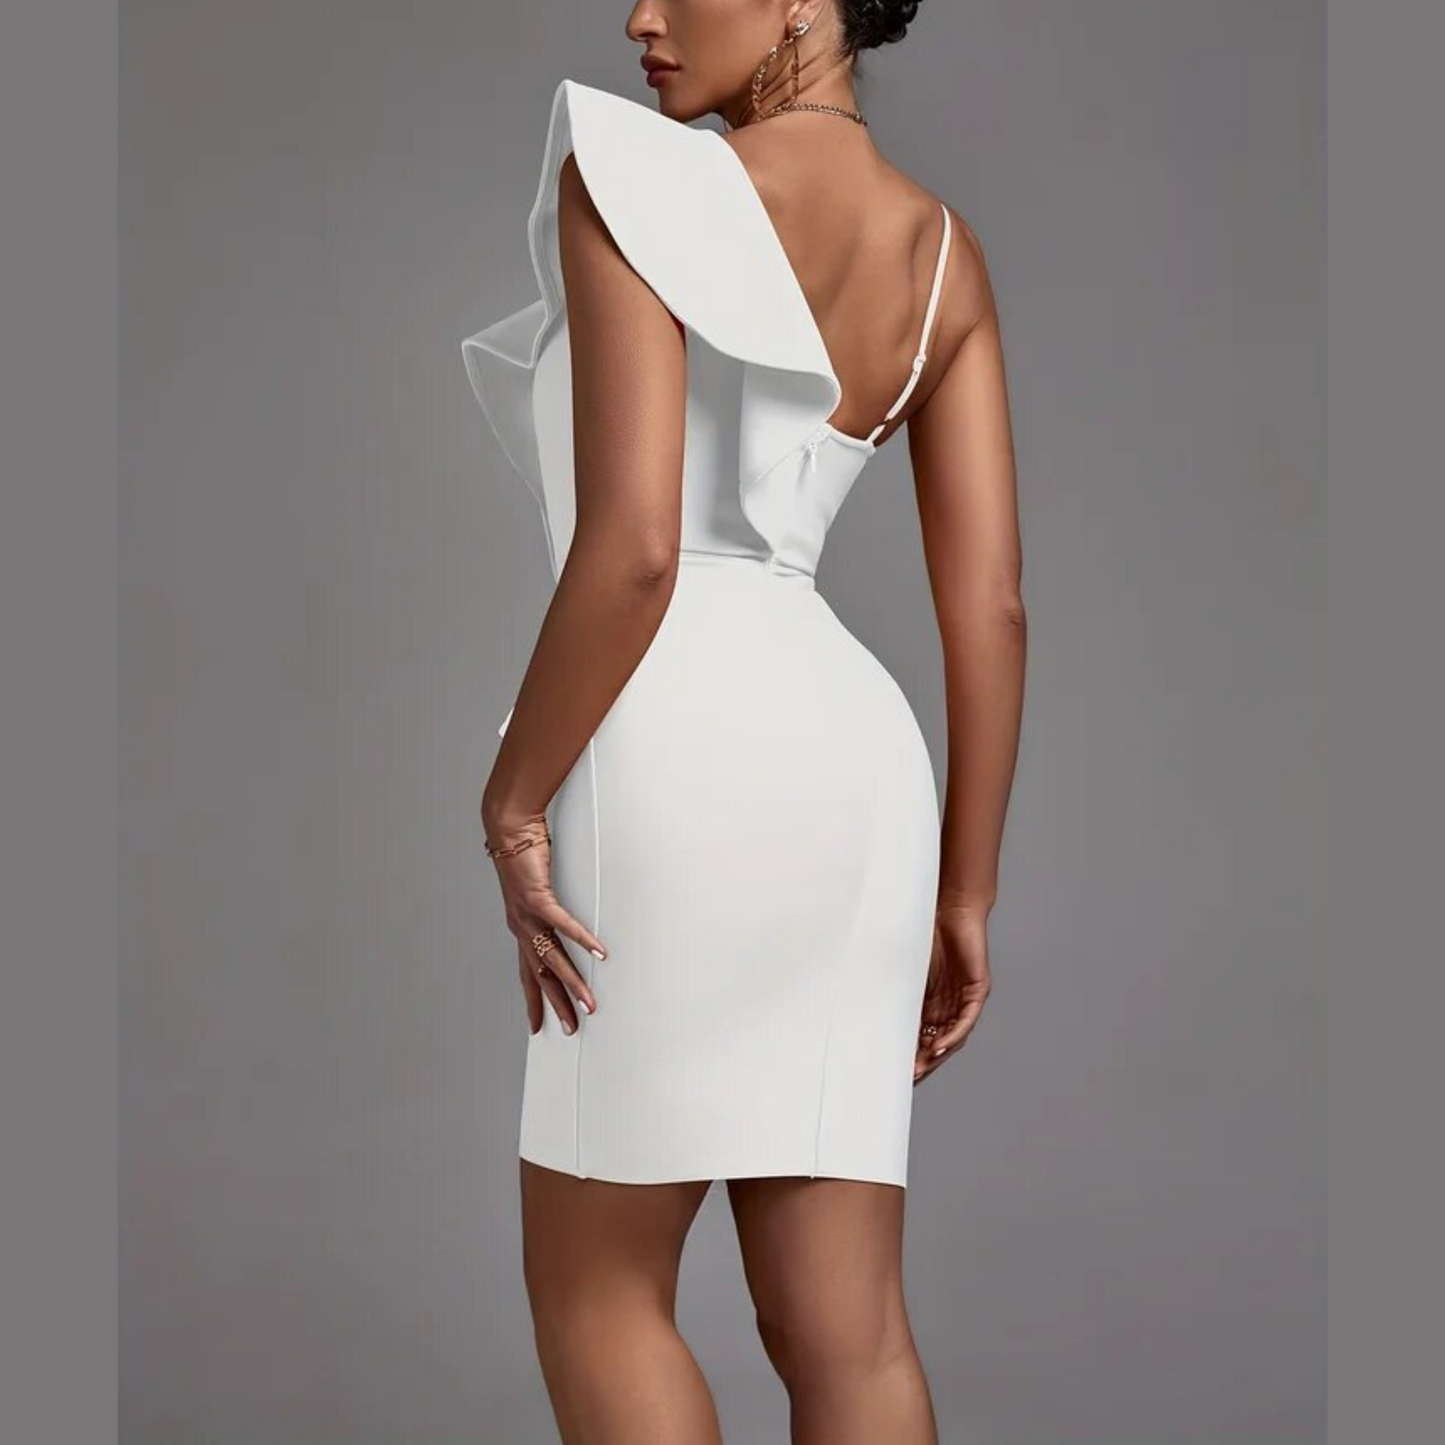 Elena - White Ruffle Bandage Dress